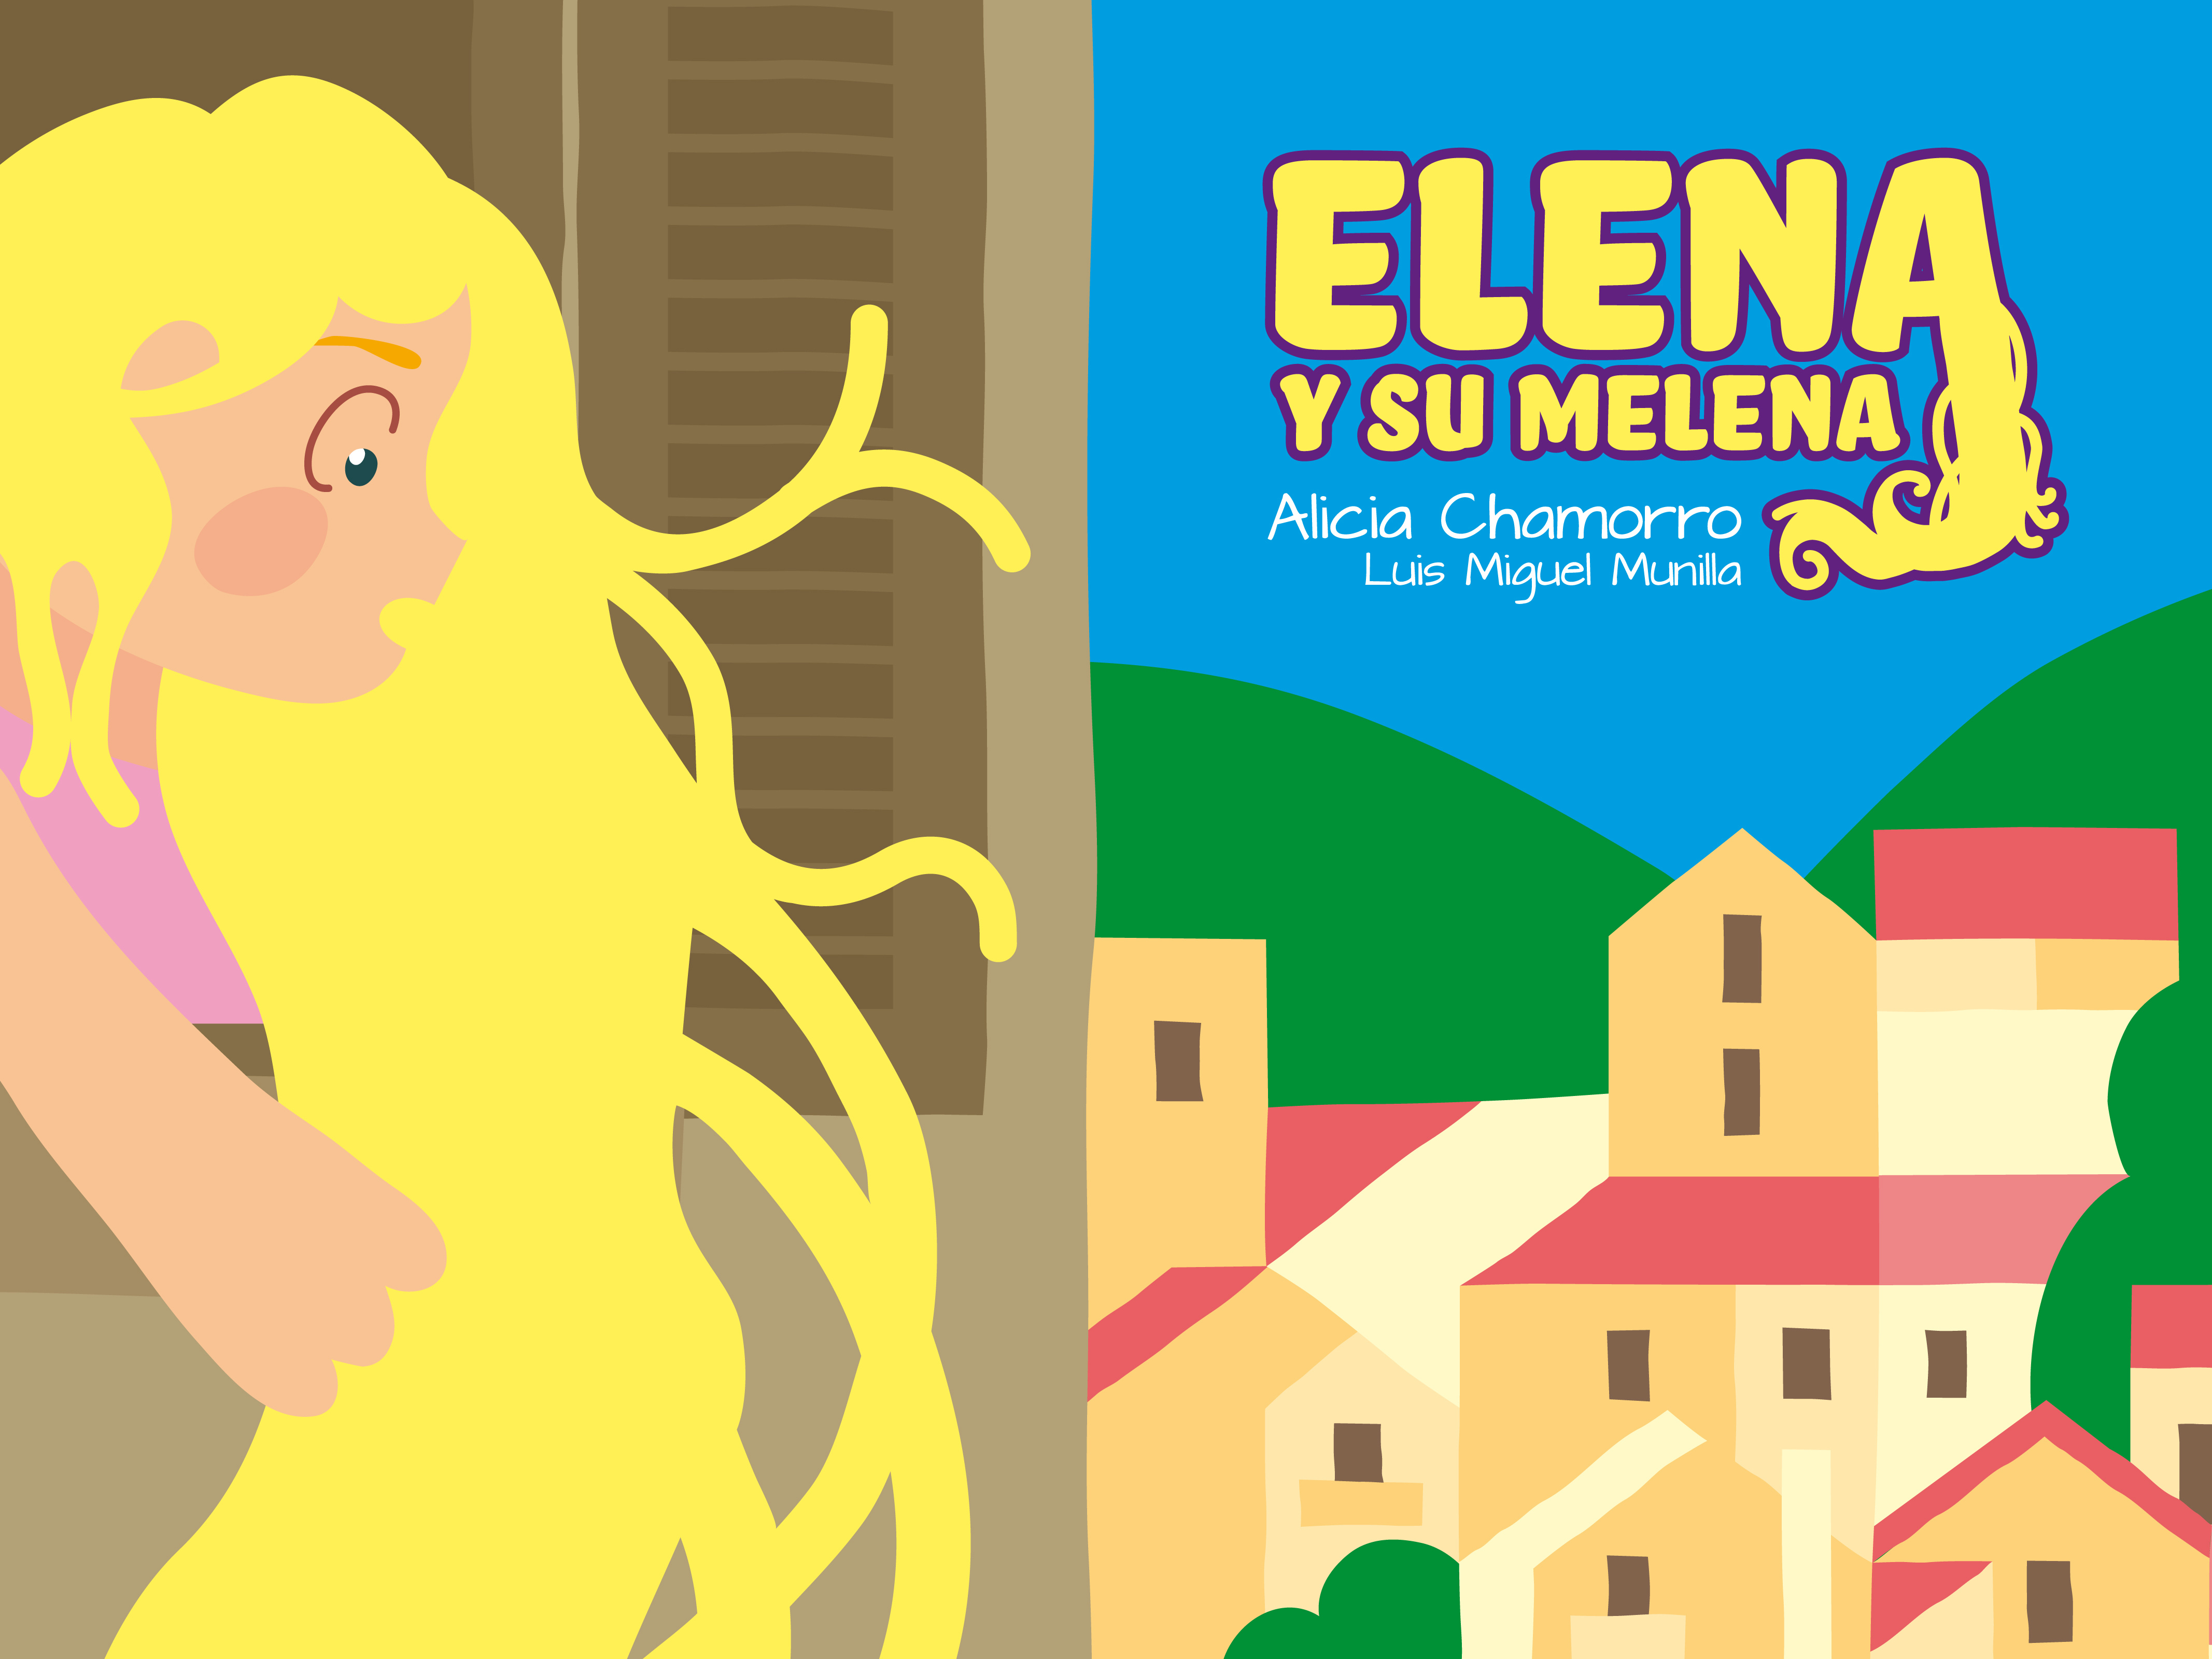 Elena y su melena by Luis Miguel Munilla - Creative Work - $i